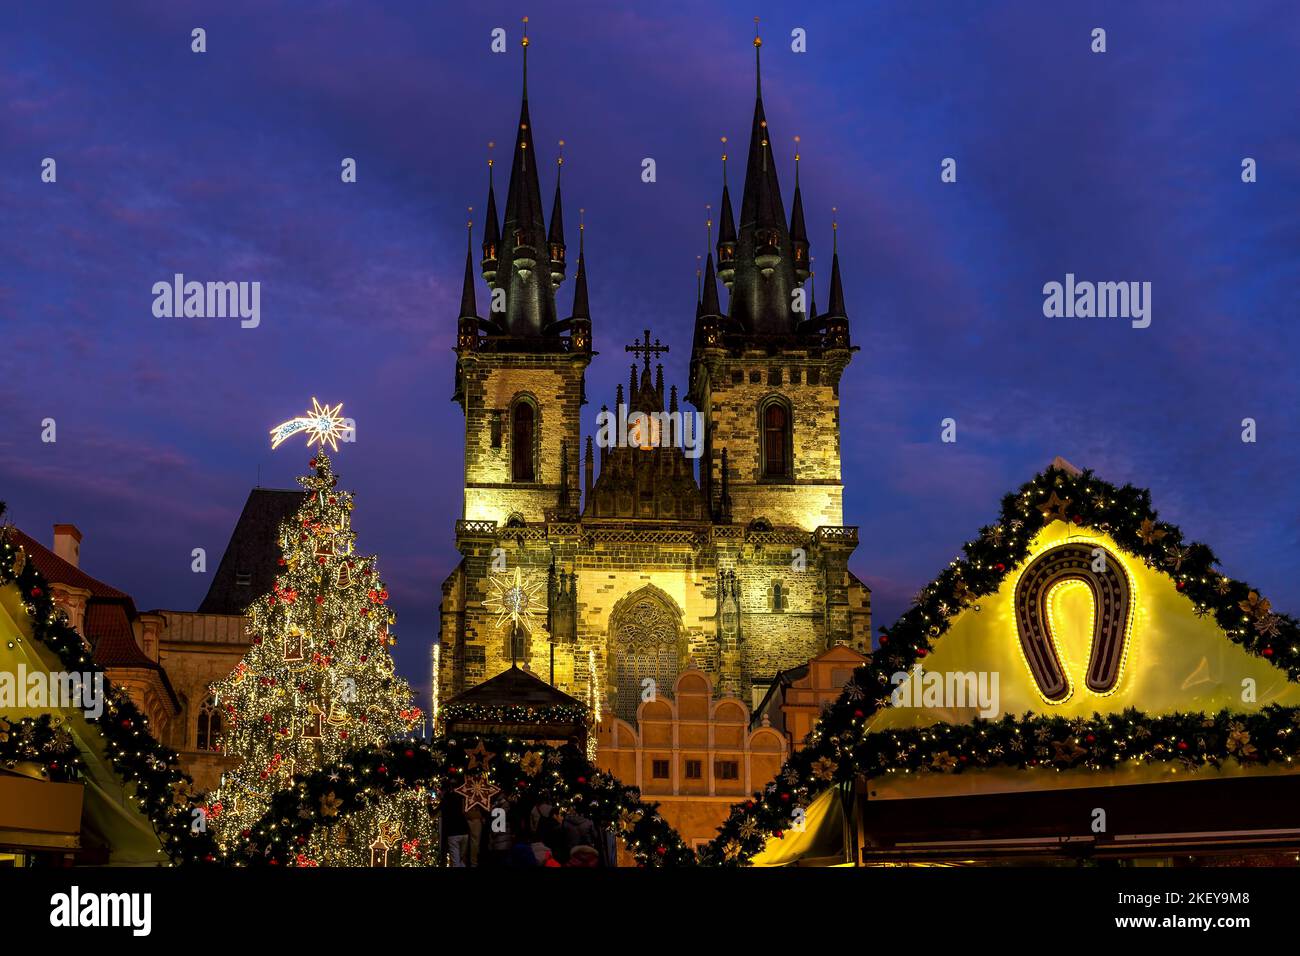 Beleuchteter Weihnachtsbaum und berühmte Tyn-Kirche auf dem Altstädter Ring unter dem Abendhimmel in Prag, Tschechische Republik. Stockfoto